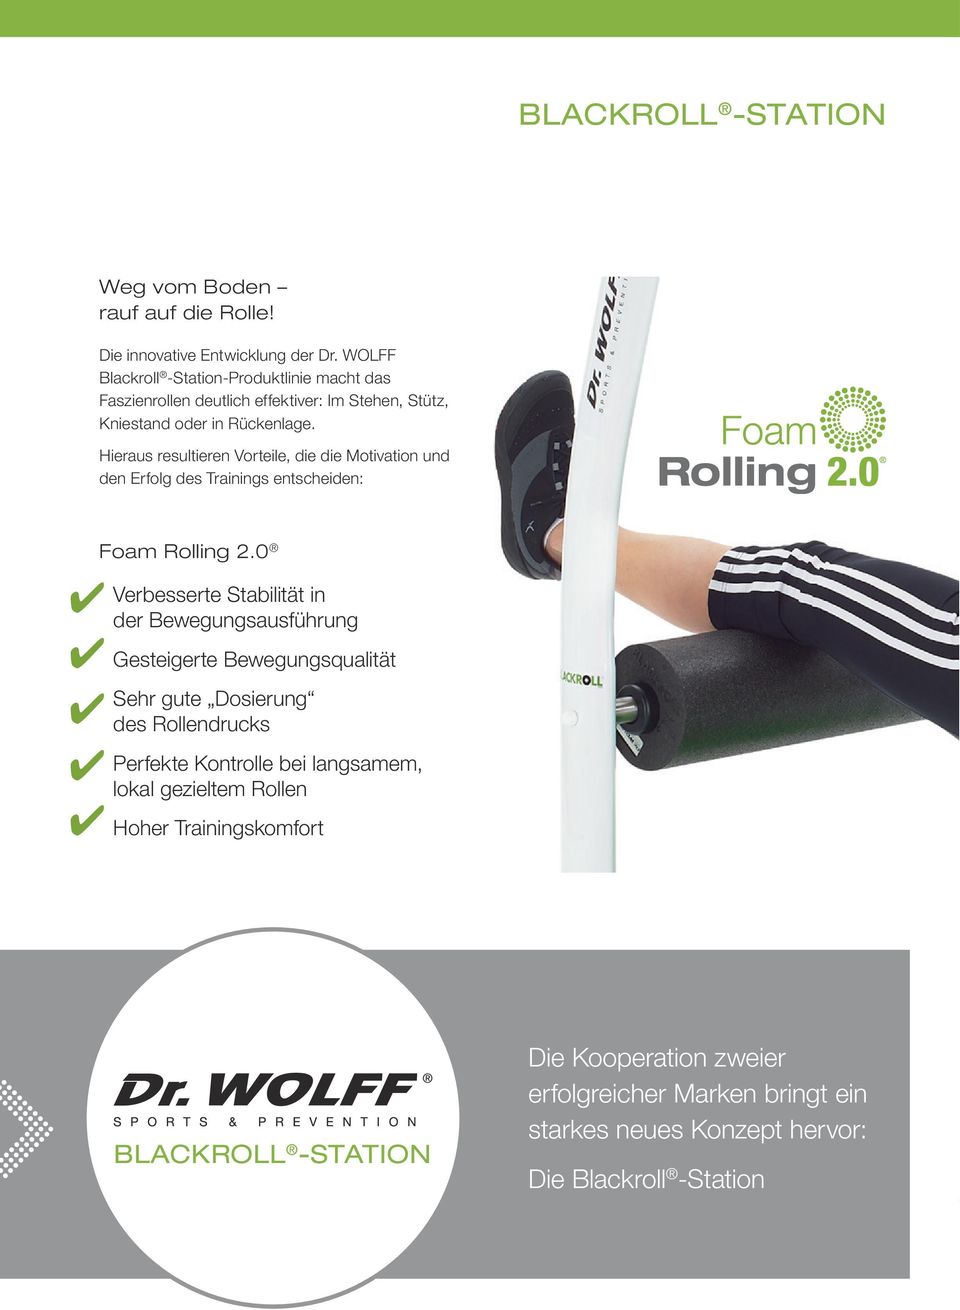 Hieraus resultieren Vorteile, die die Motivation und den Erfolg des Trainings entscheiden: Foam Rolling 2.